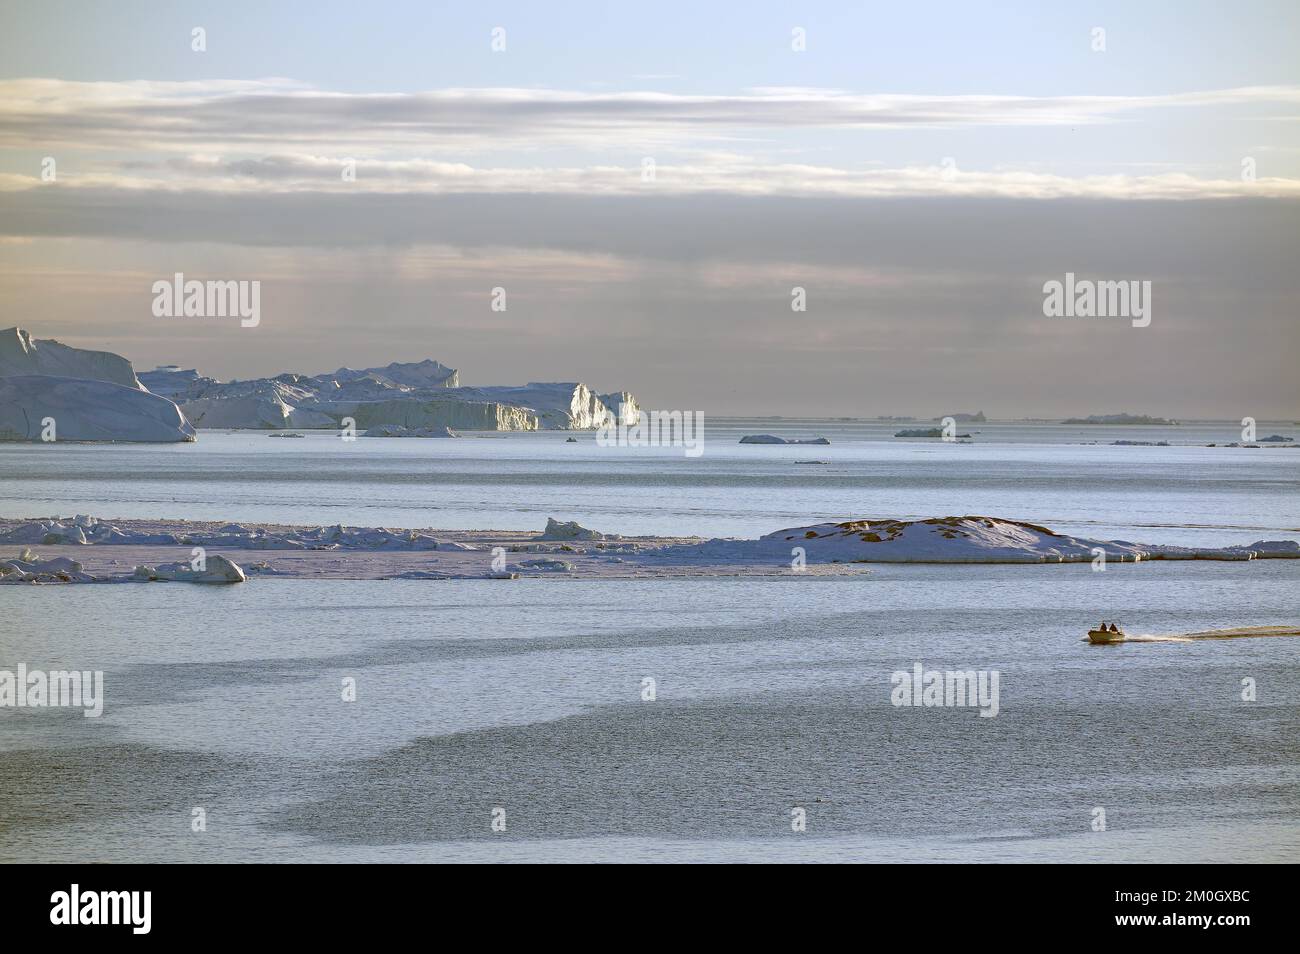 Piccola barca di fronte alle rocce, ghiaccio e iceberg enormi, luce soffusa sera, Baia di Disko, Ilulissat, Groenlandia, Danimarca, Nord America Foto Stock